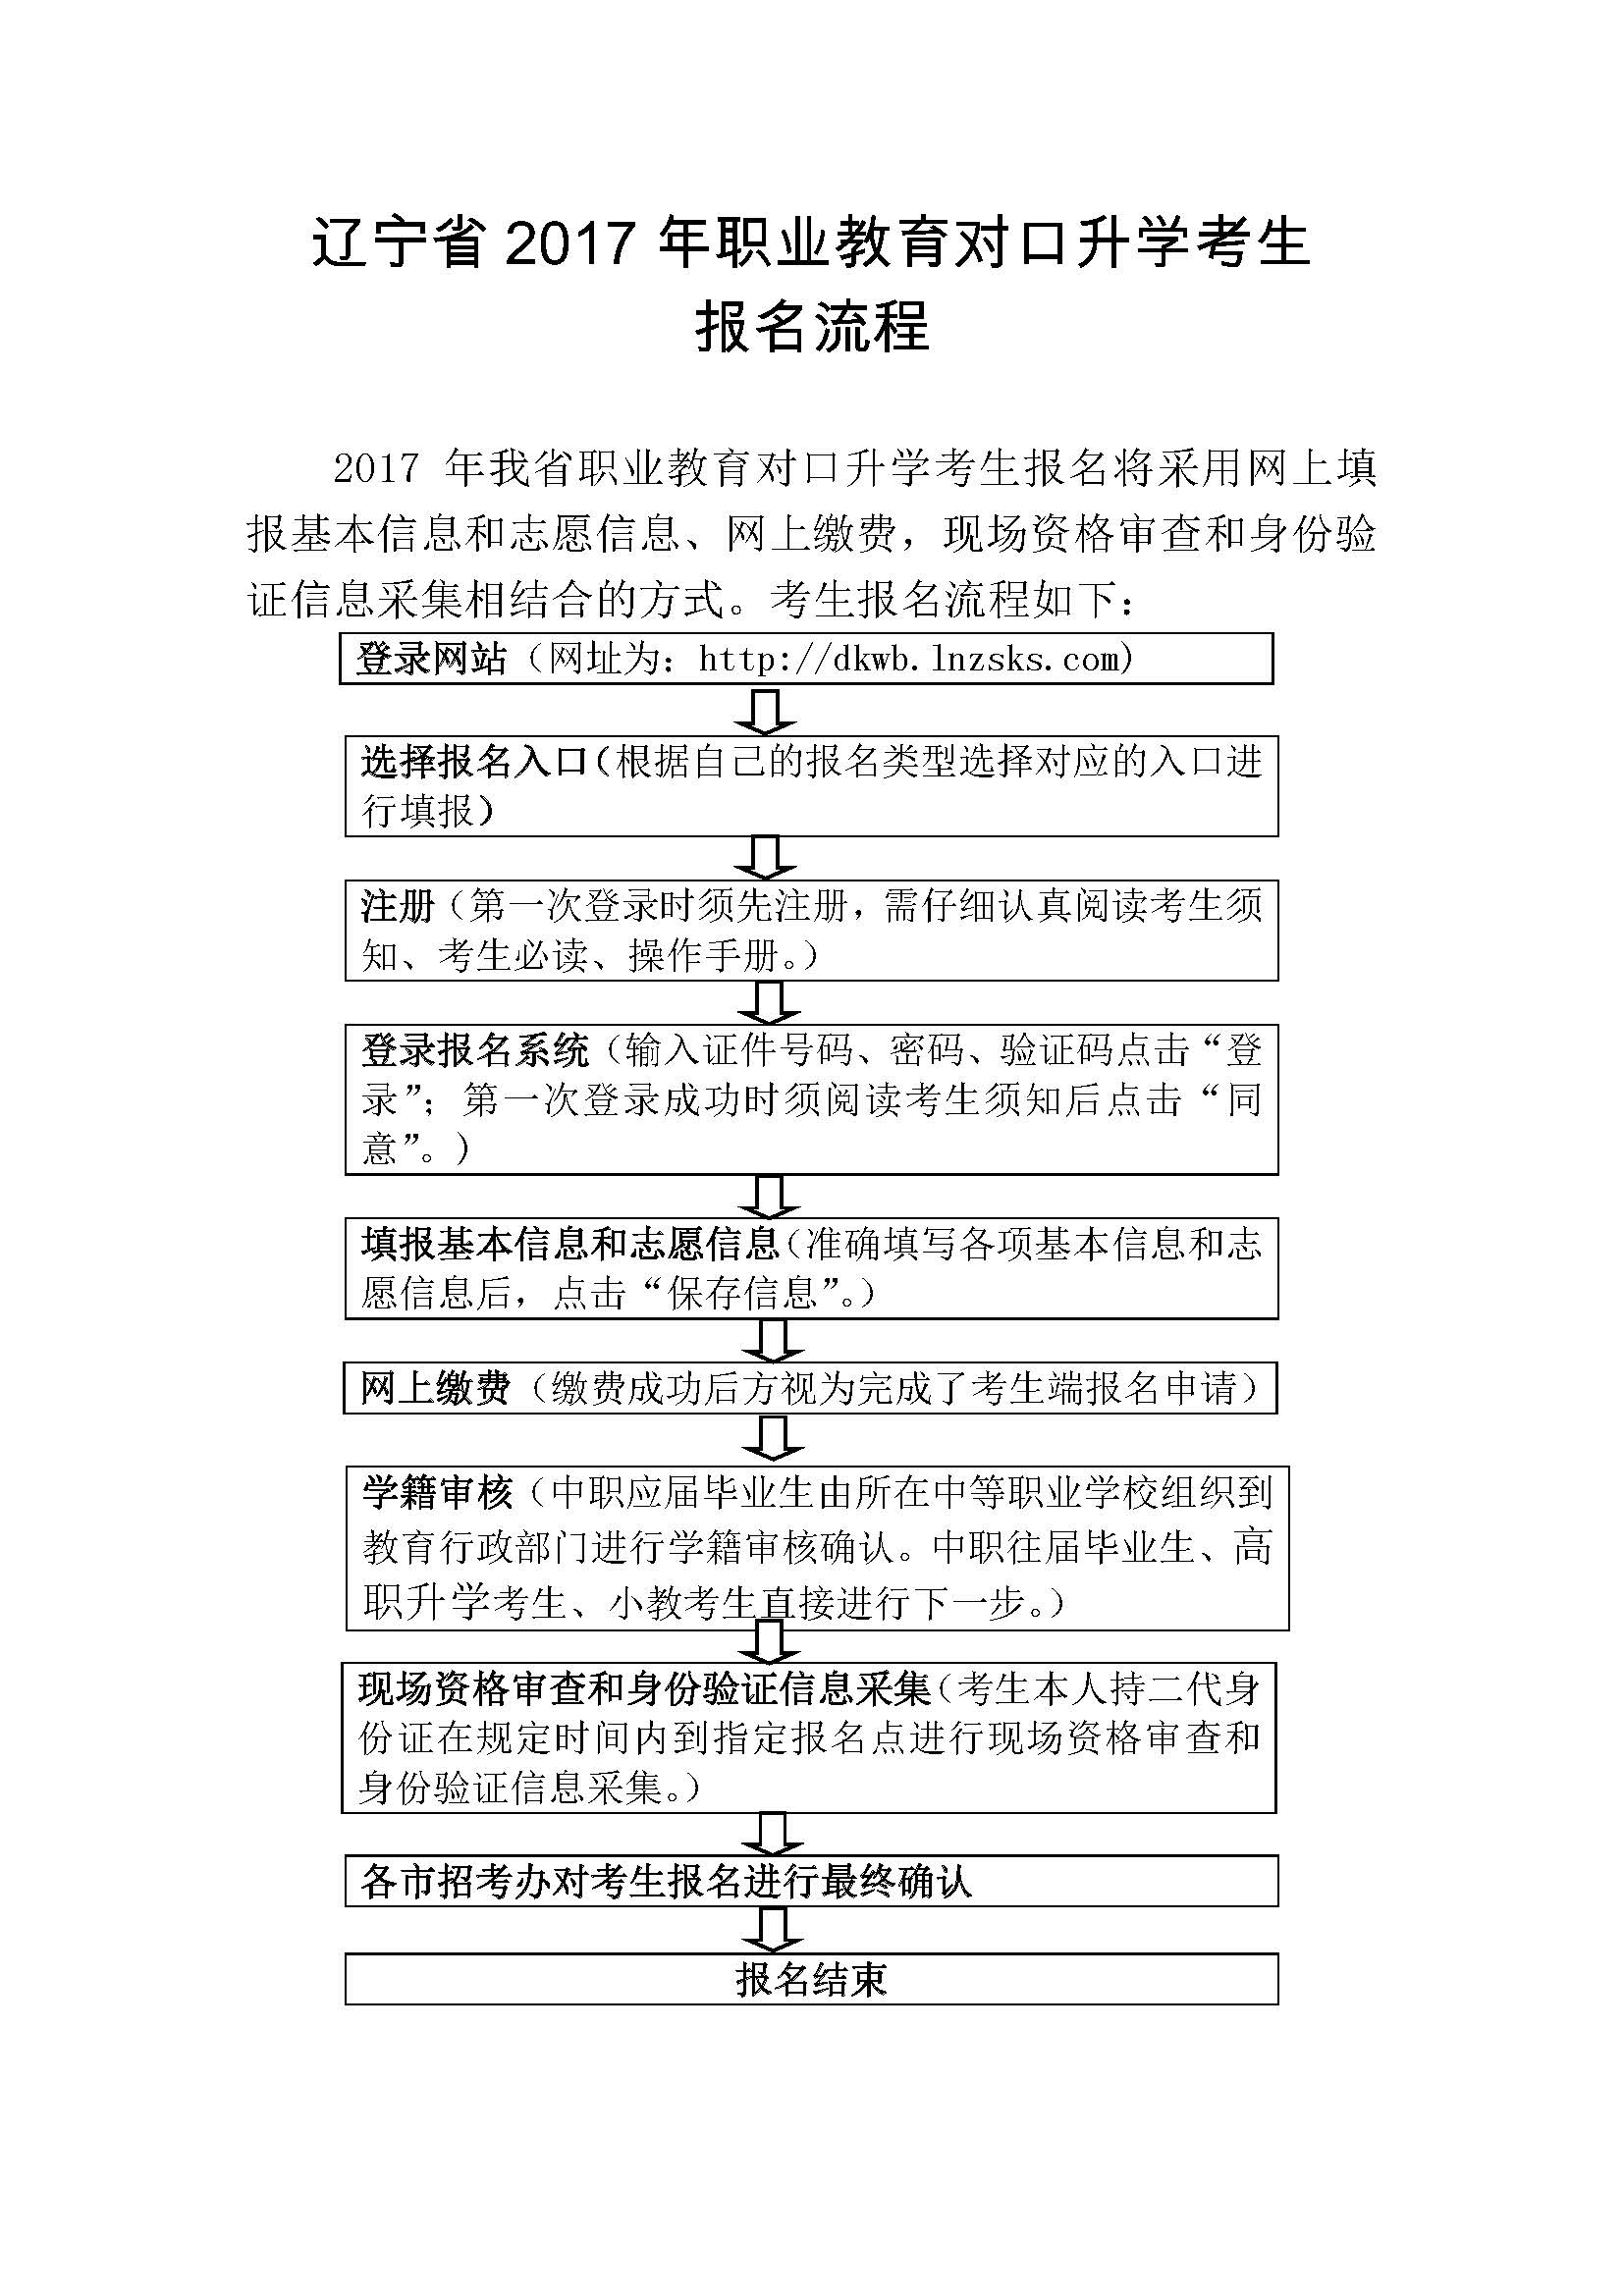 辽宁省2017年职业教育对口升学考生报名流程